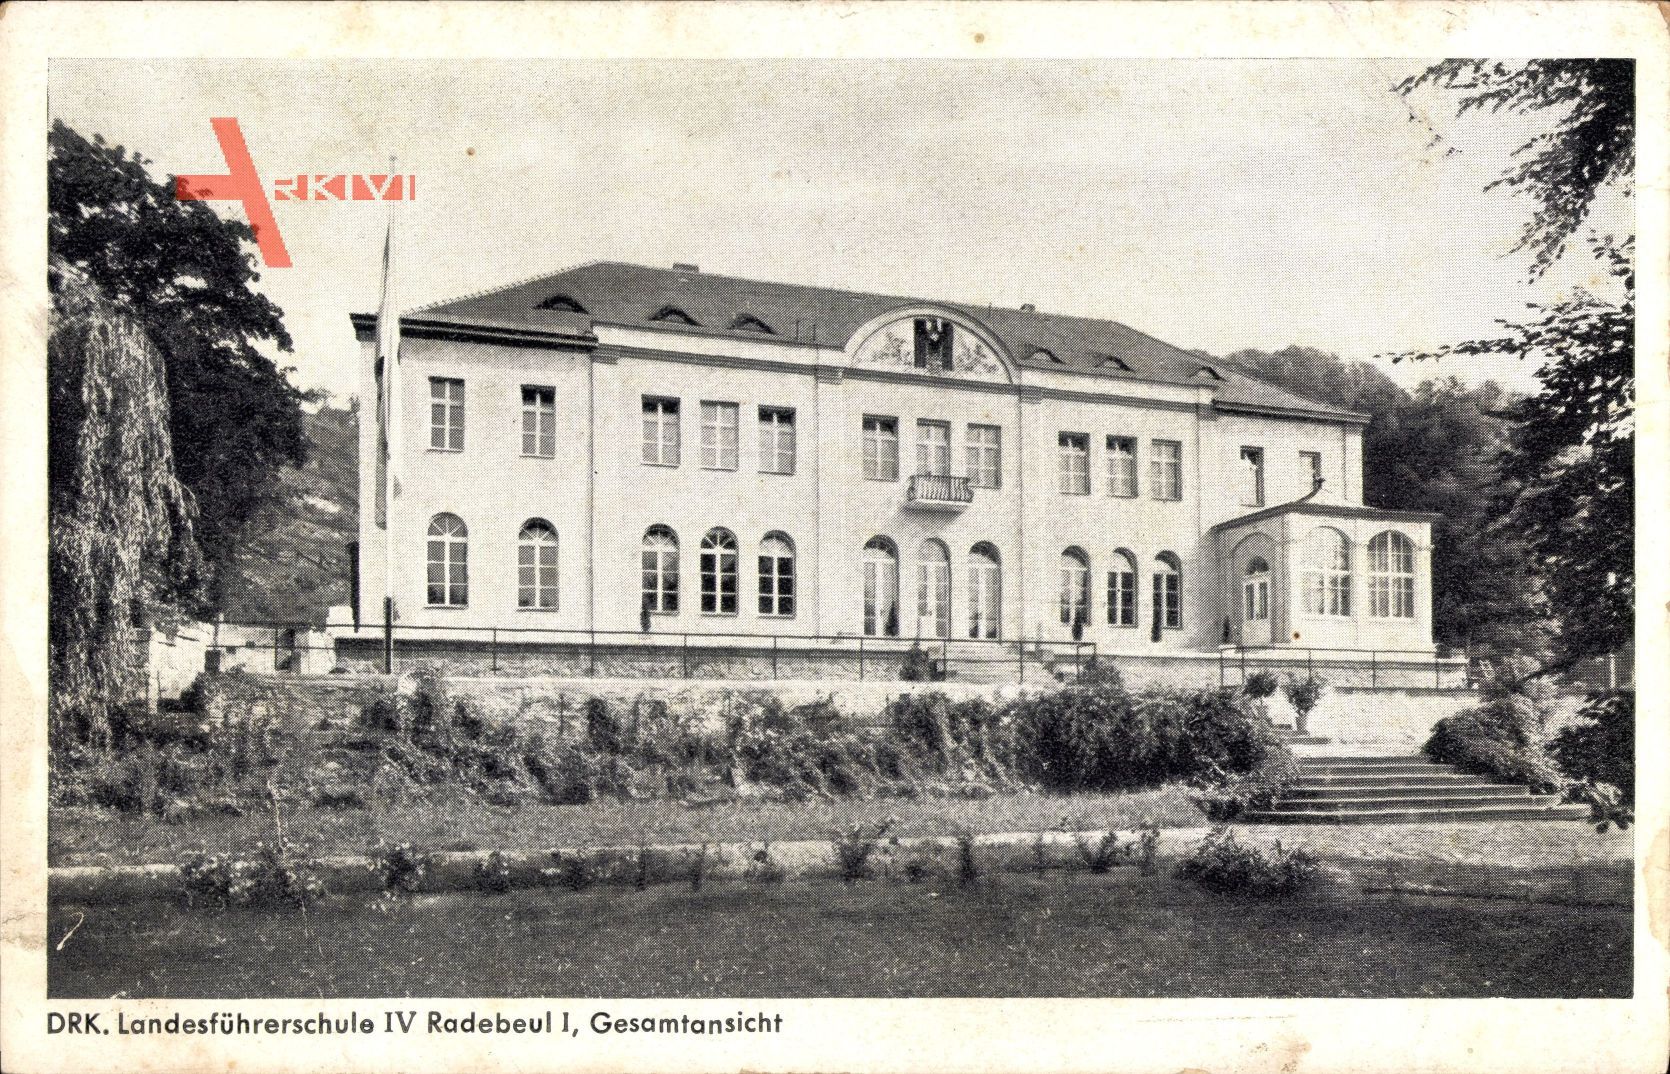 Radebeul, DRK Landesführerschule IV, Gesamtansicht, Fassade, Treppe